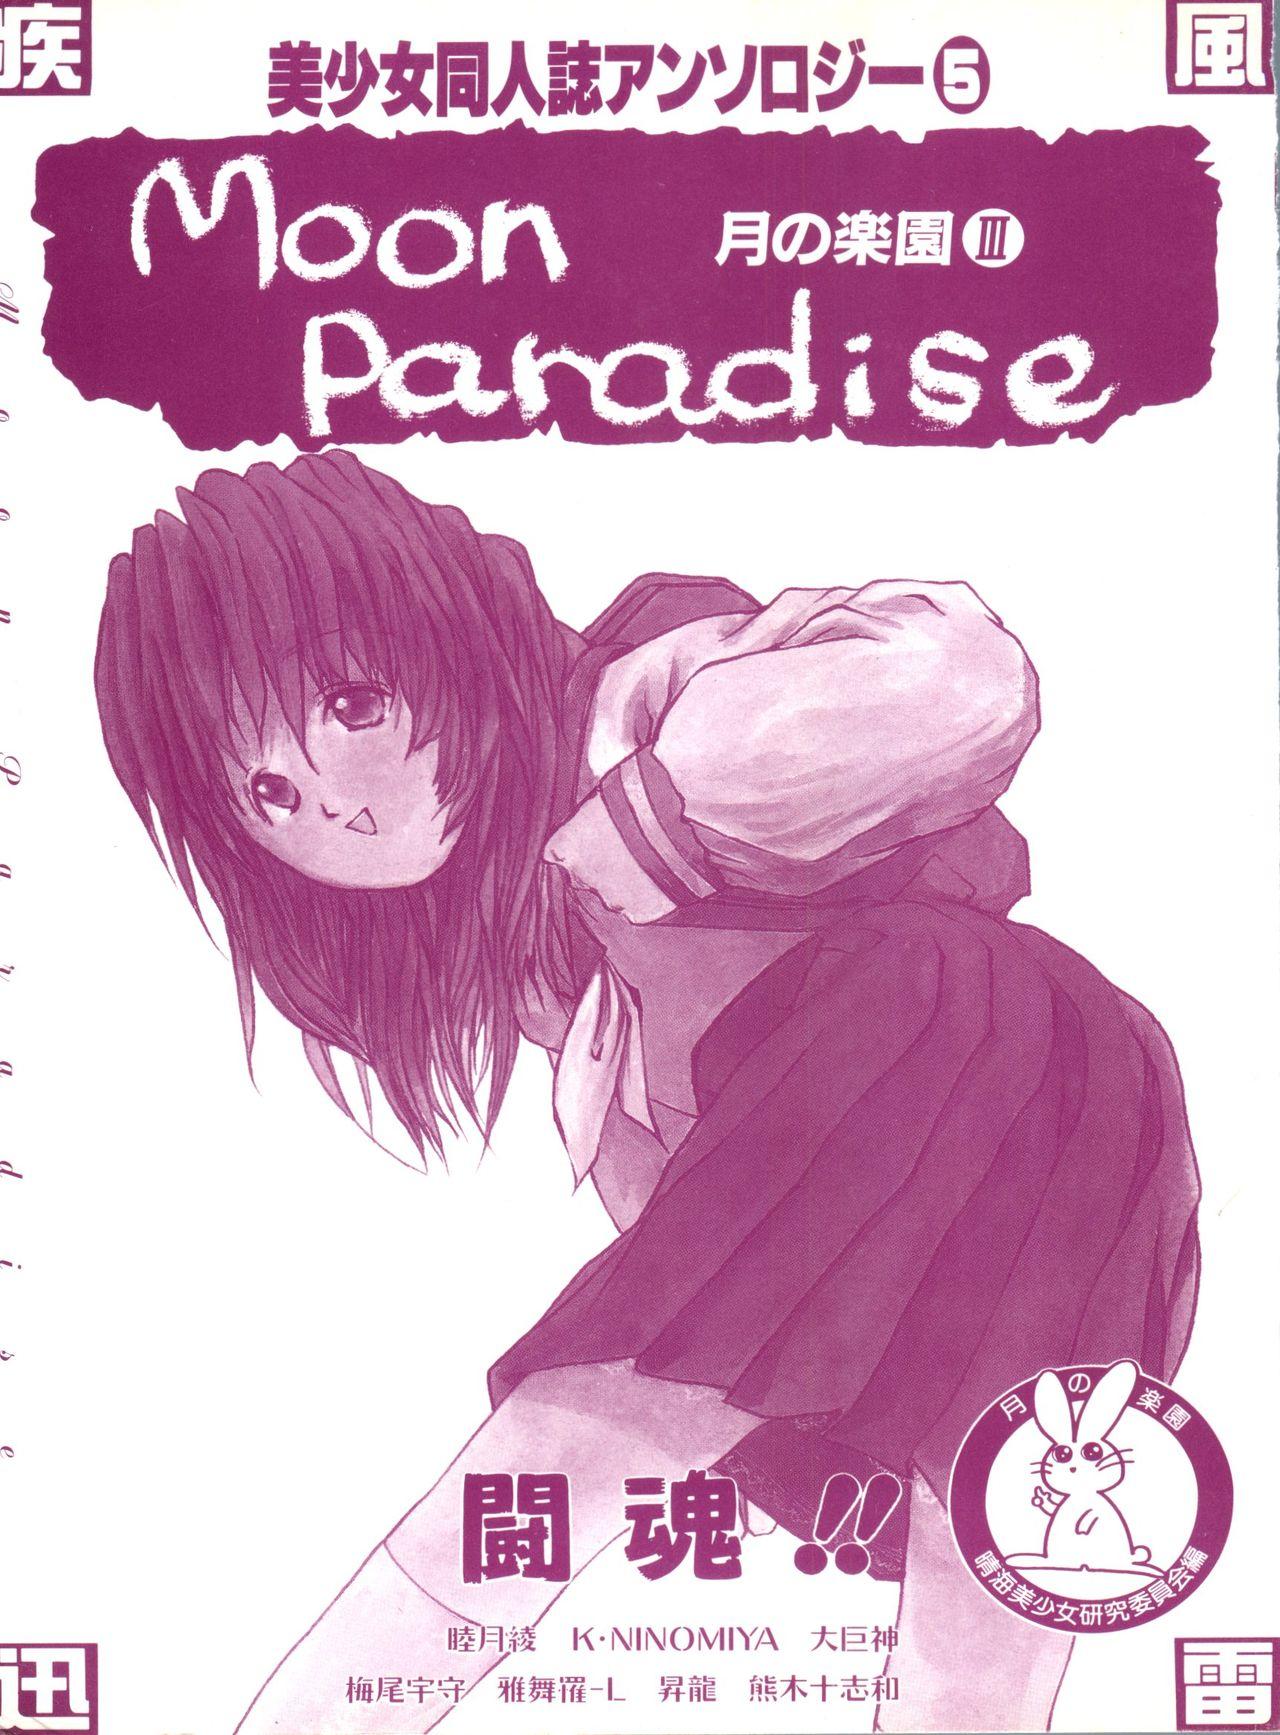 Bishoujo Doujinshi Anthology 5 - Moon Paradise 3 Tsuki no Rakuen 1